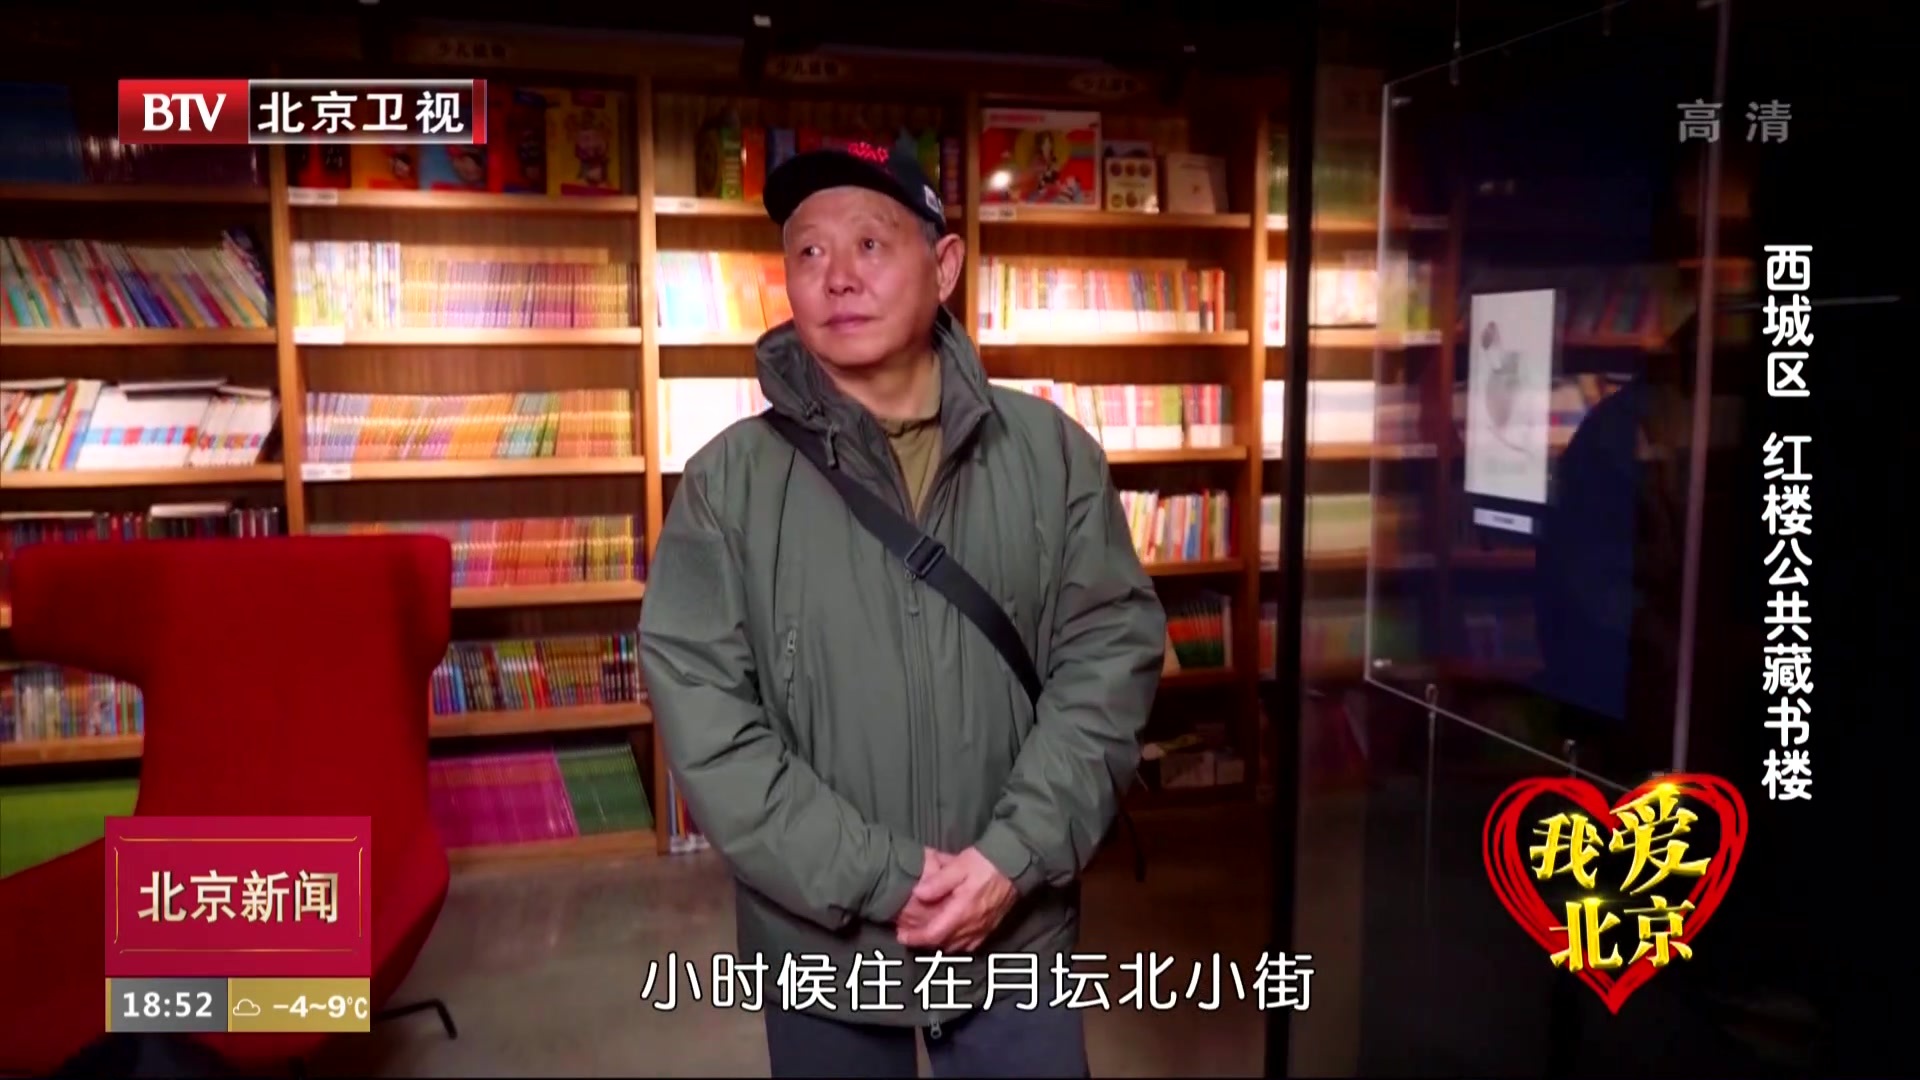 我爱北京丨西城区红楼公共藏书楼